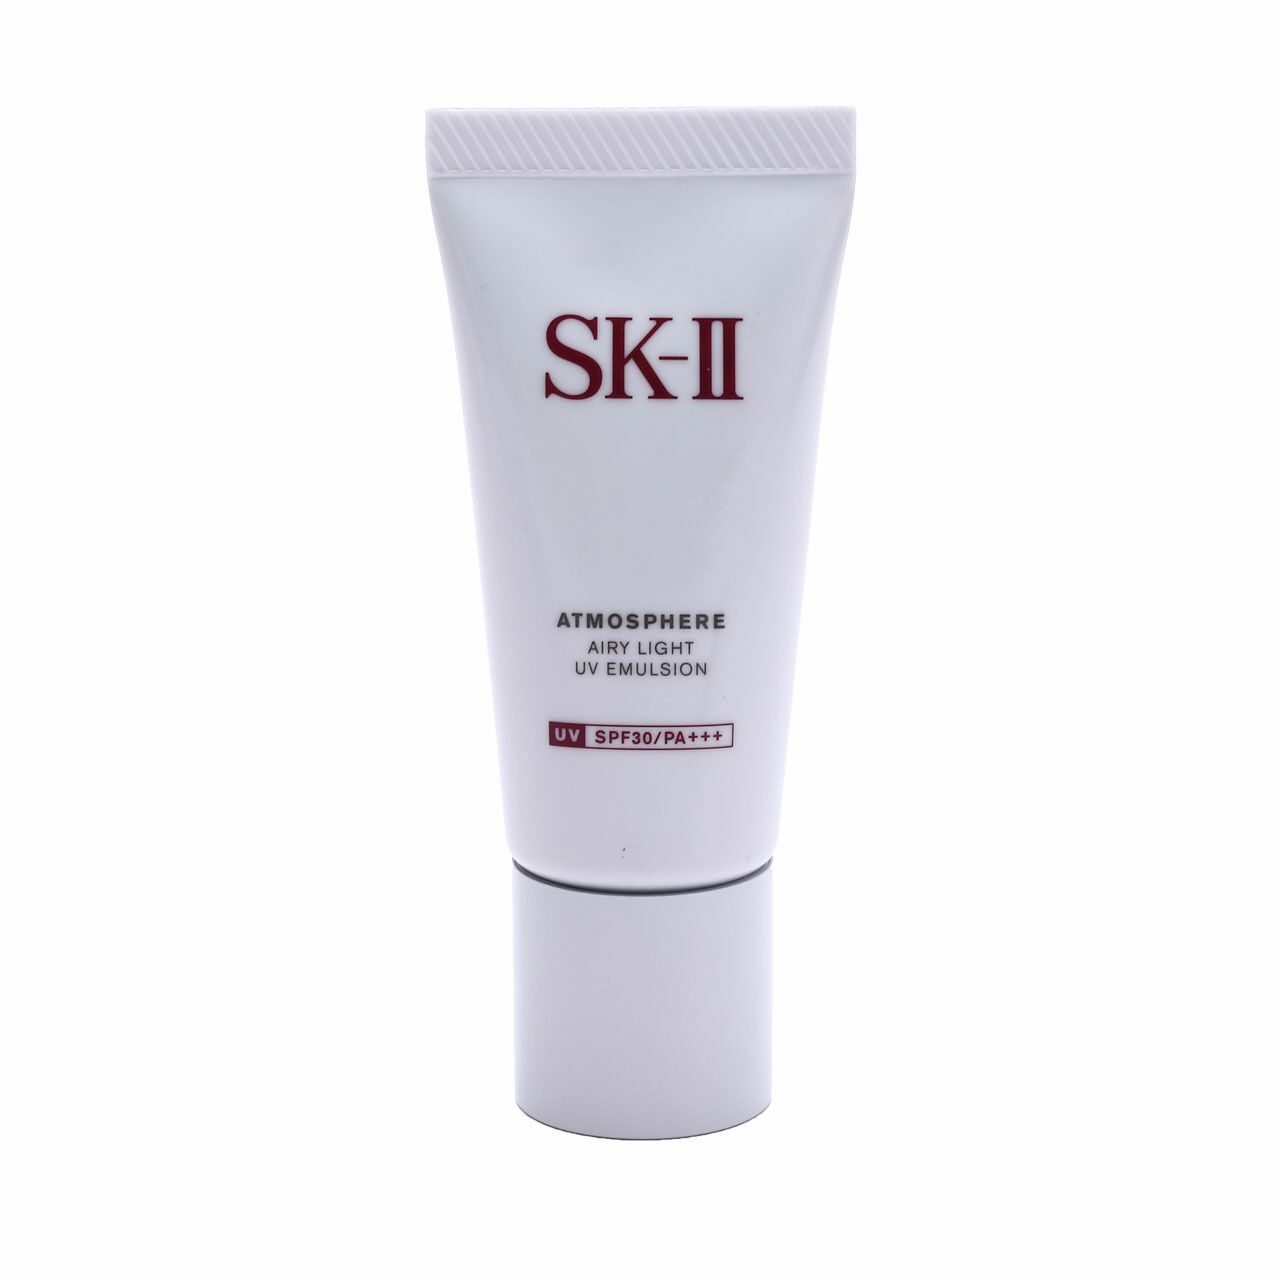 SK-II Atmosphere Airy Light Uv Emulsion Skin Care